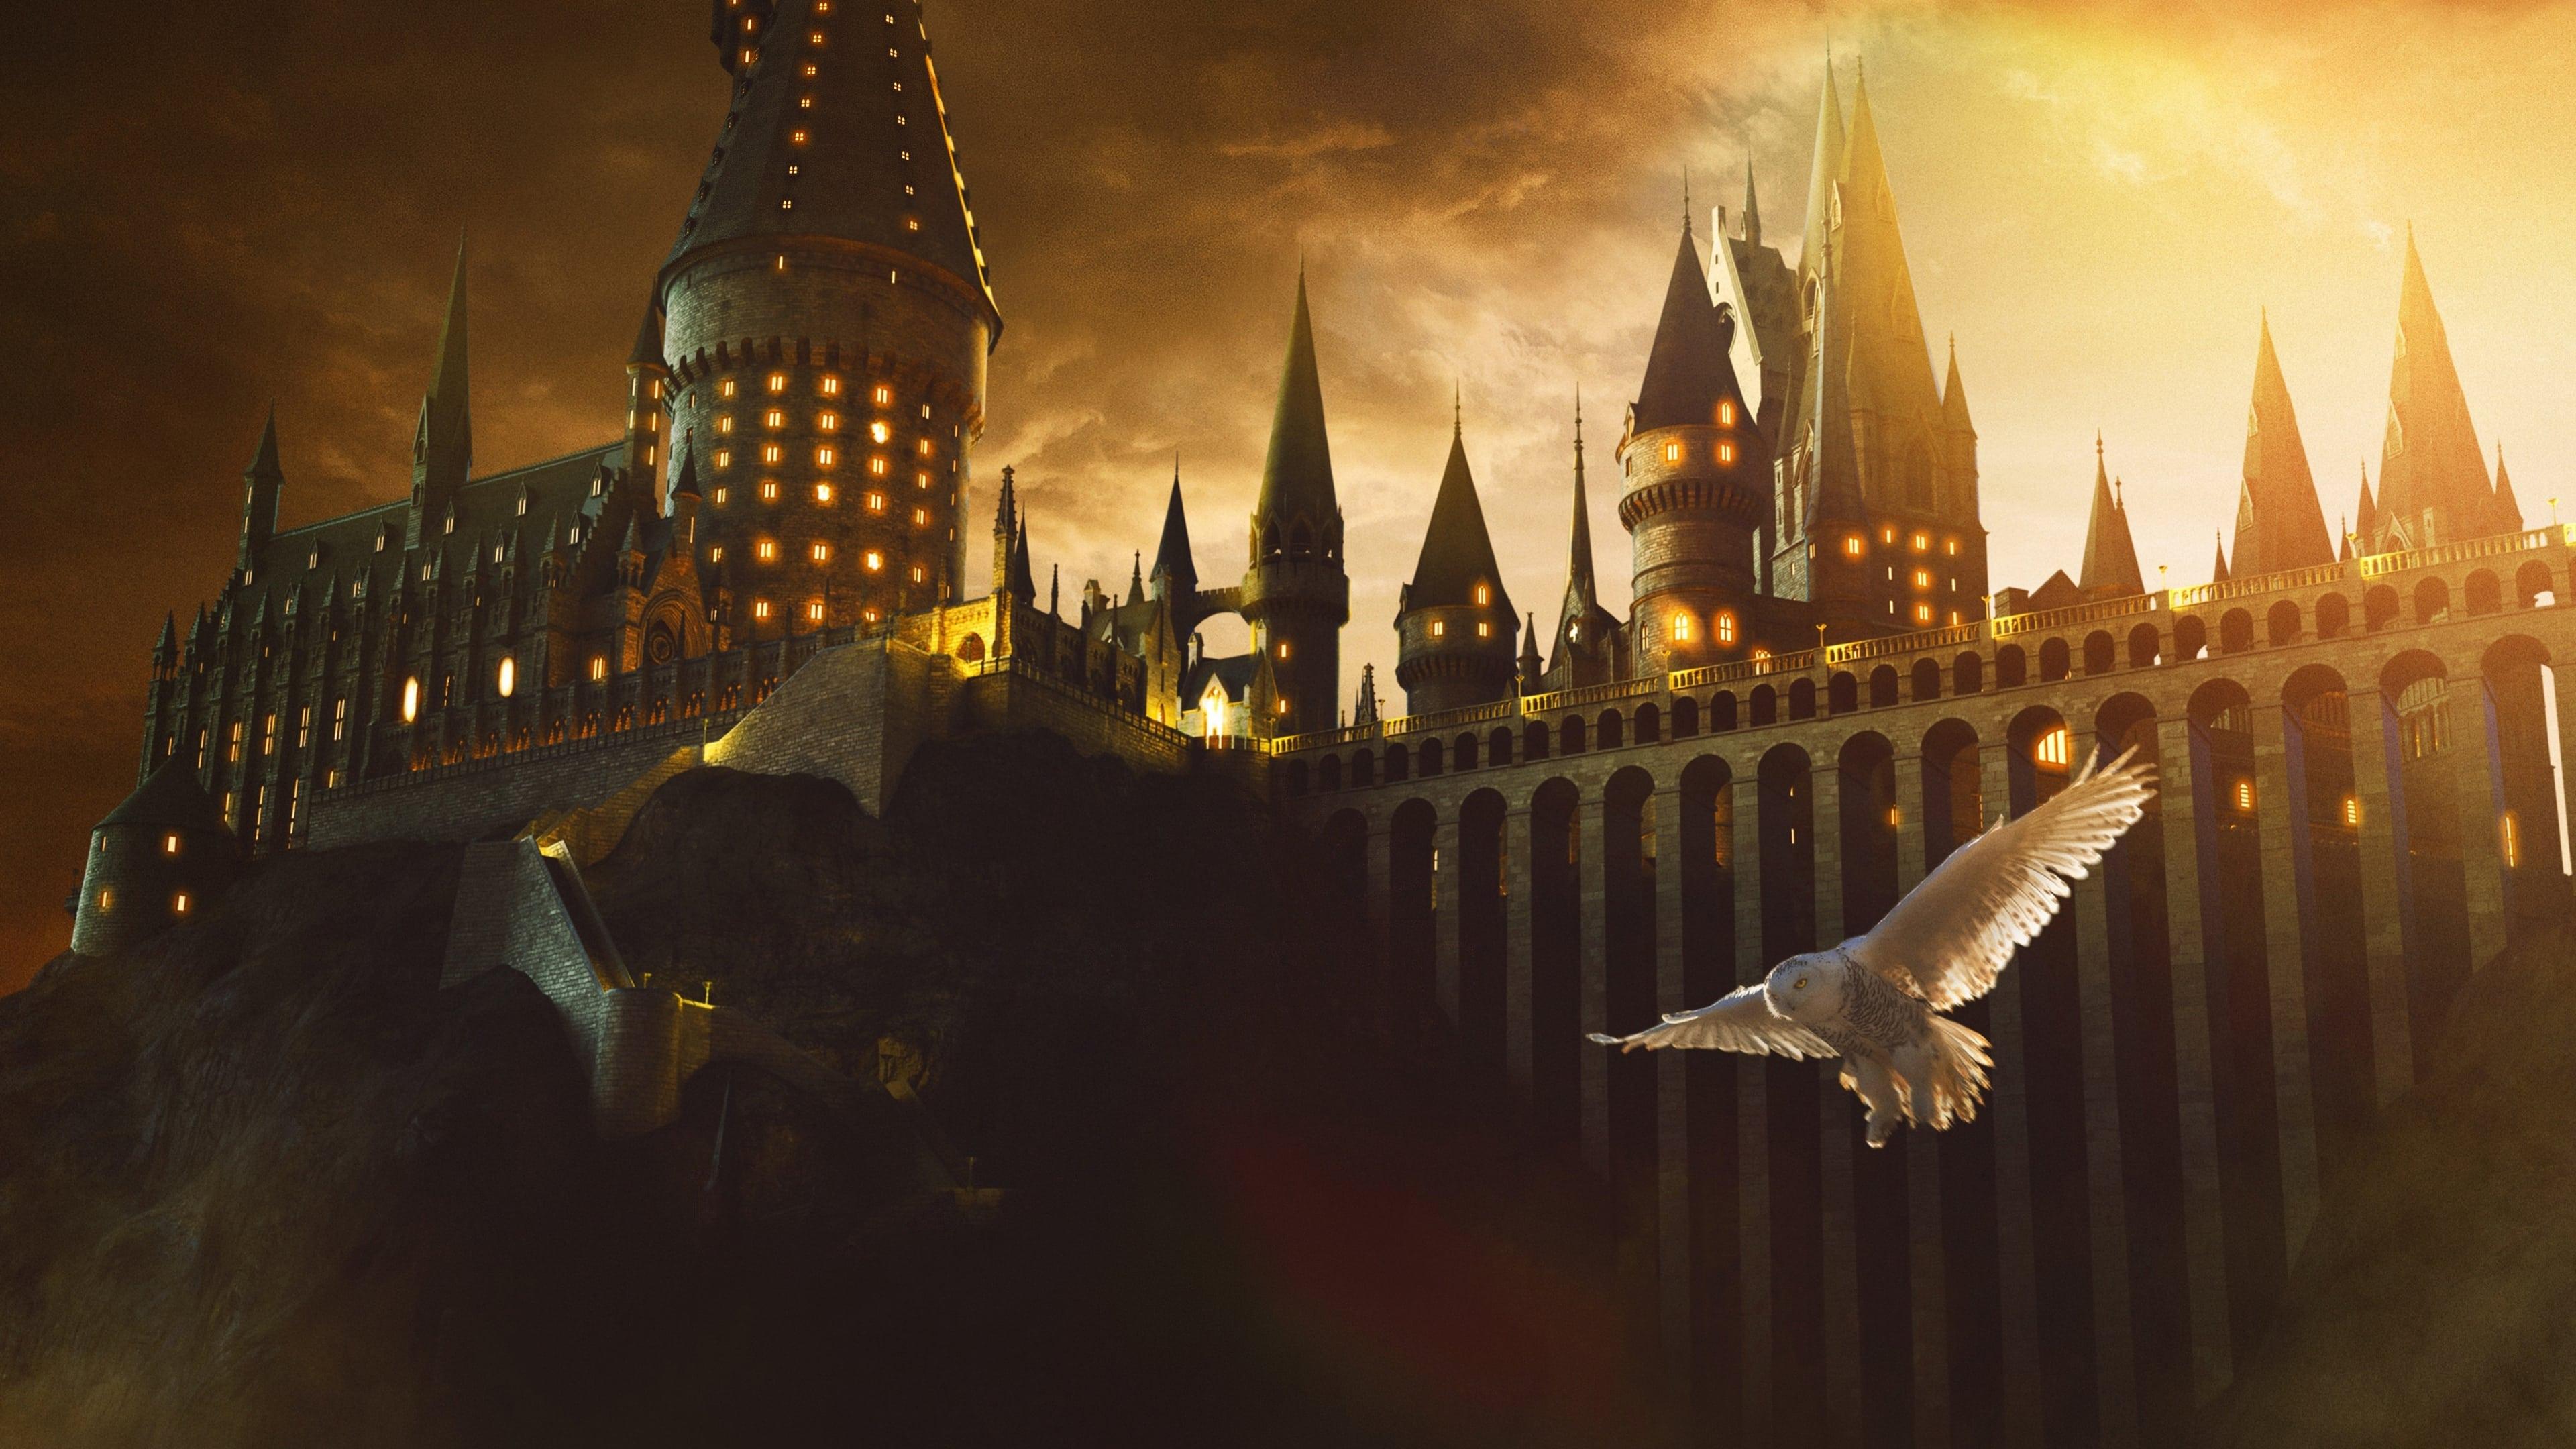 Harry Potter backdrop